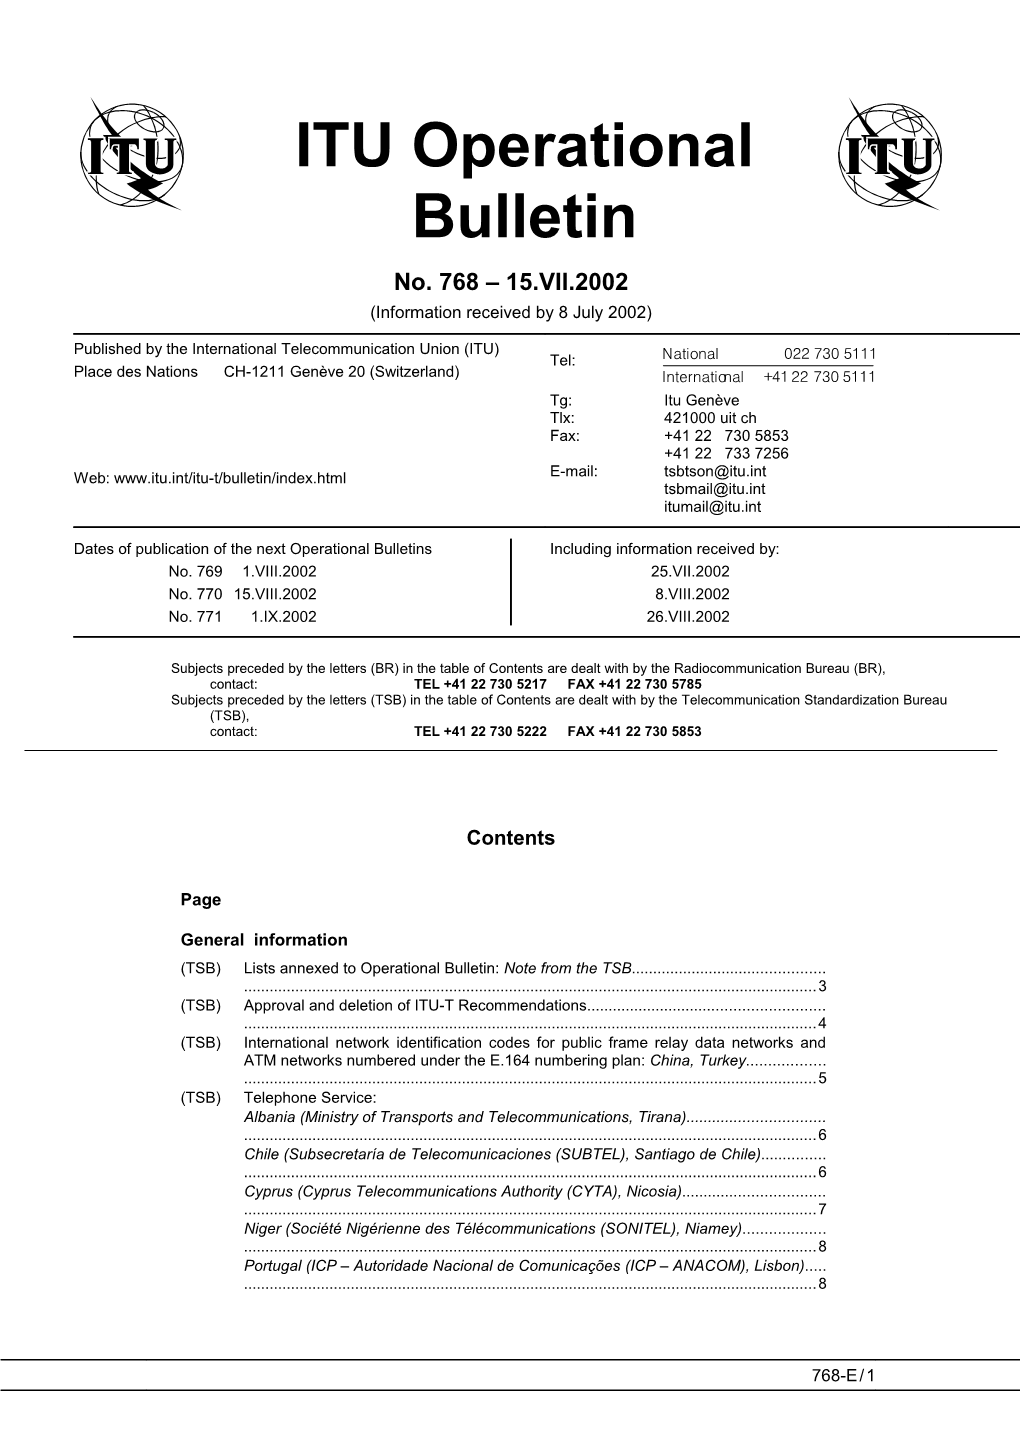 ITU Operational Bulletin 768 - 15.VII.2002